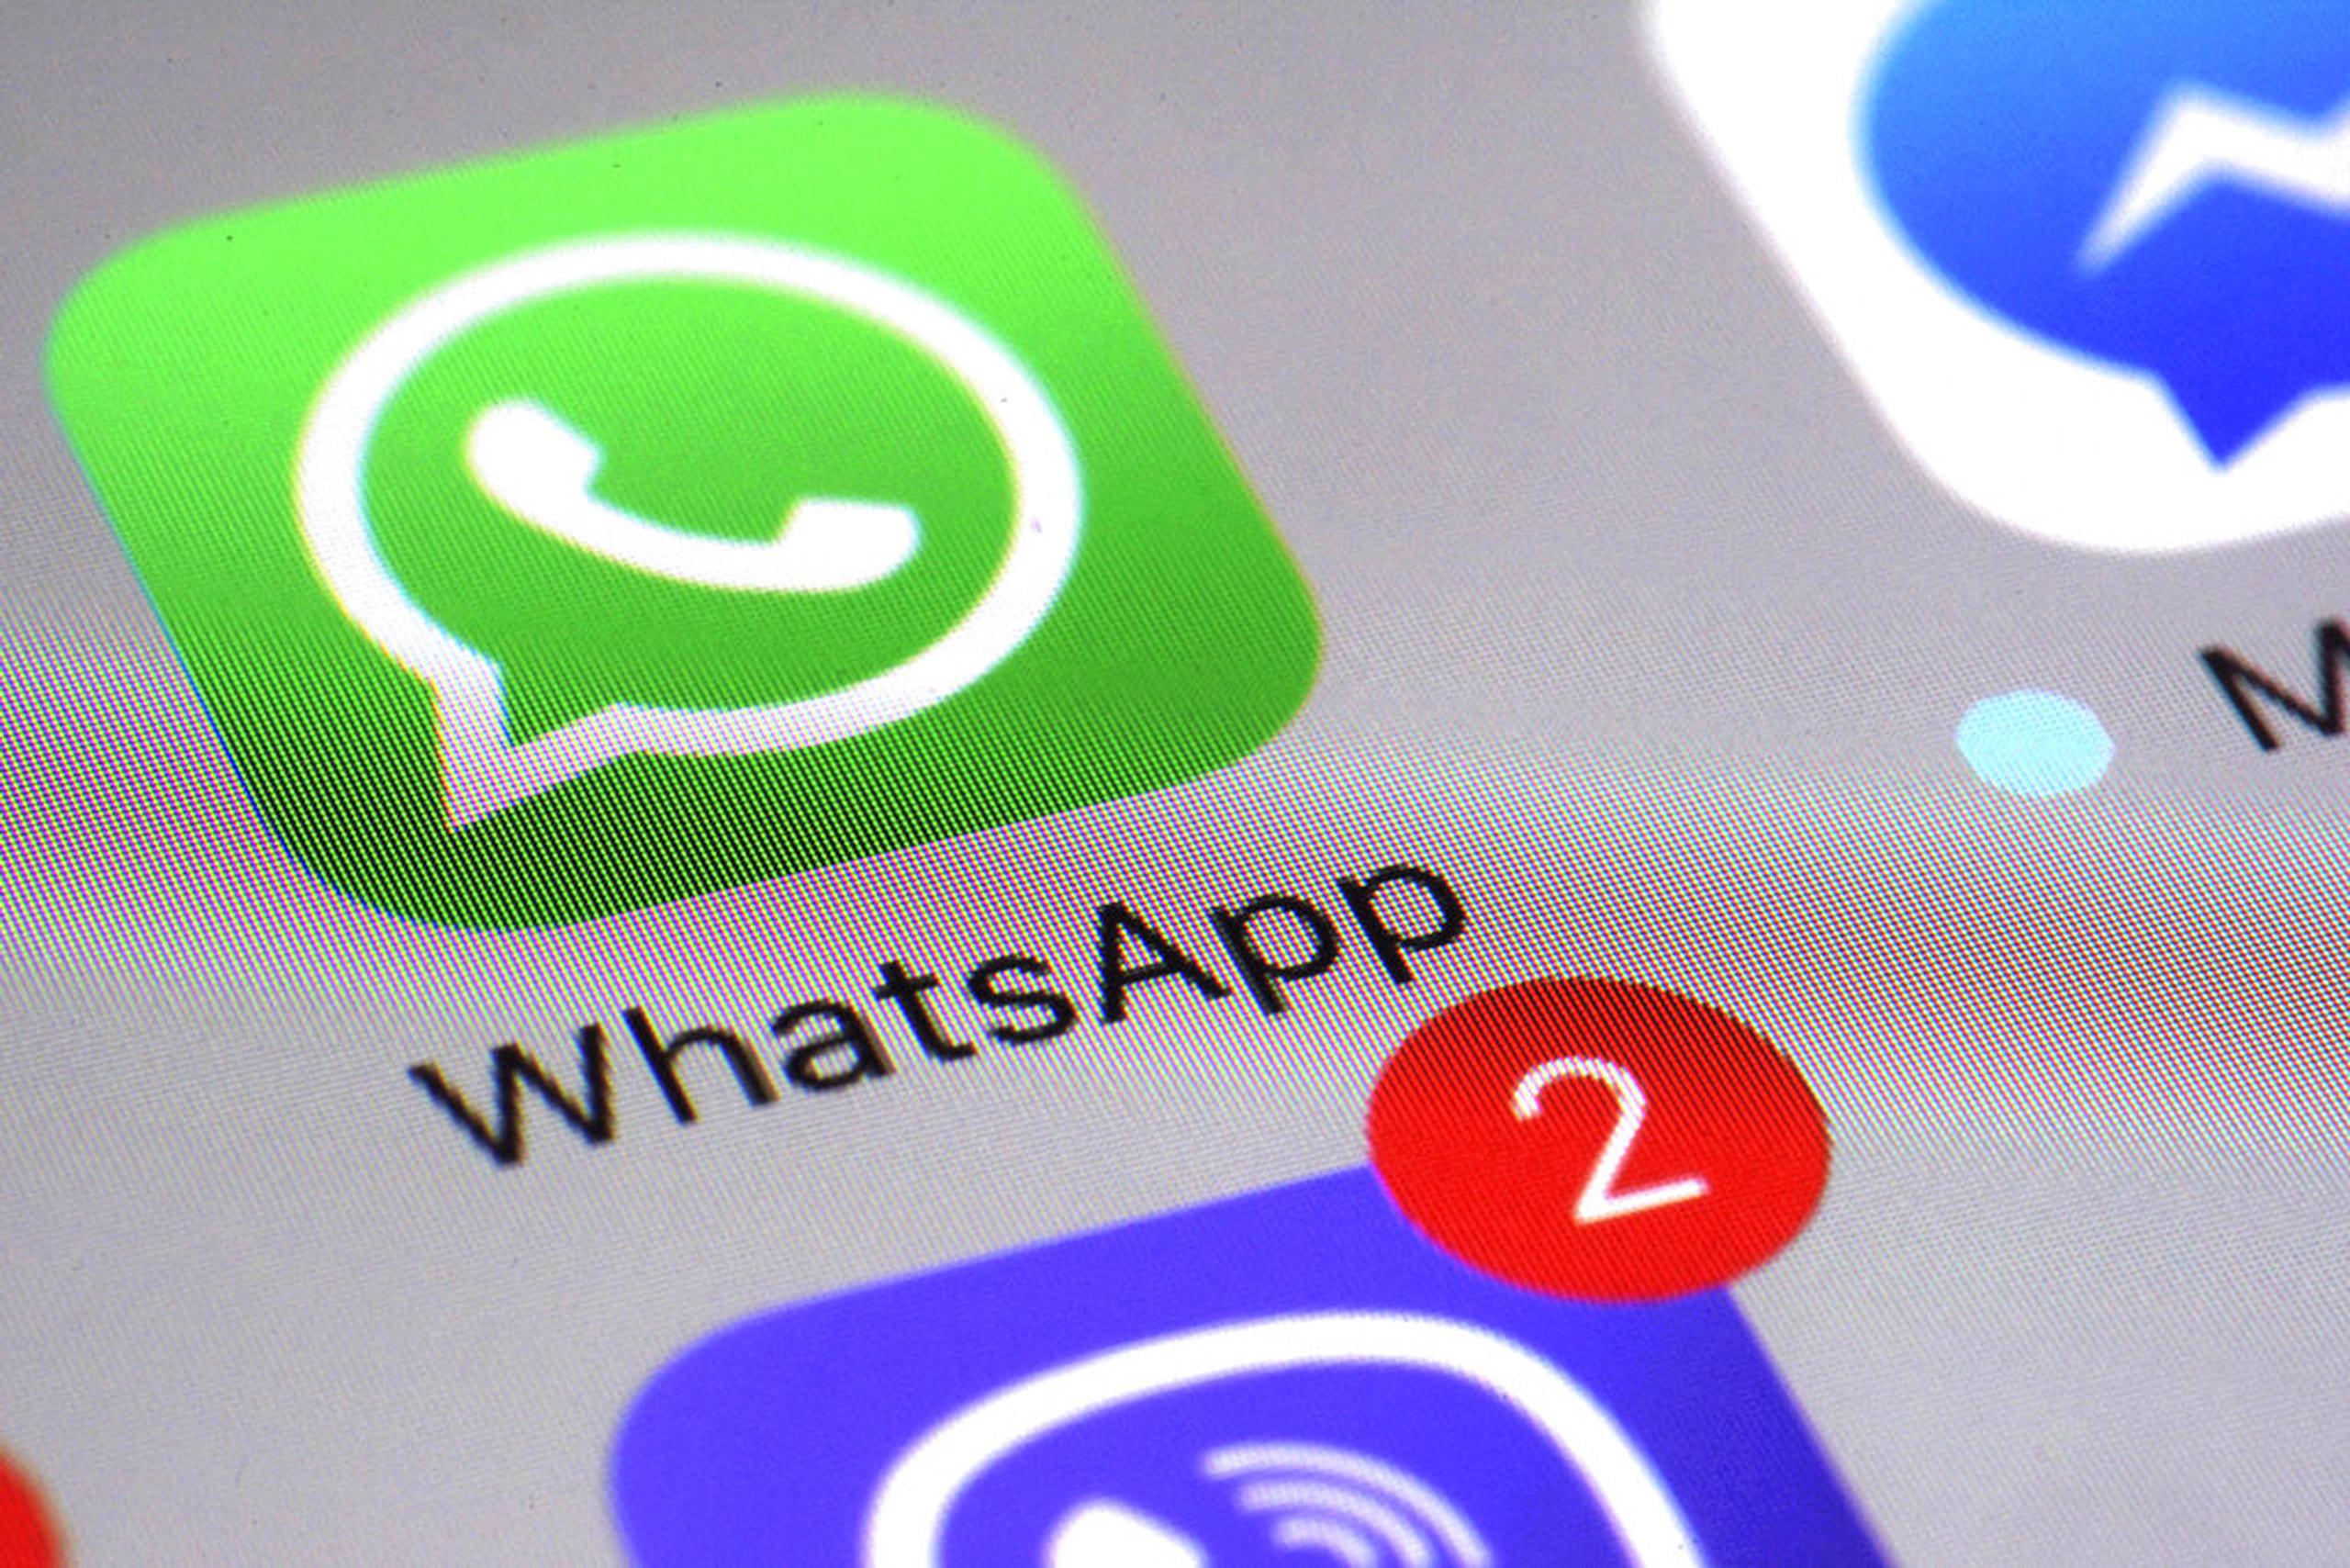 WhatsApp sigue siendo, por mucho, la aplicación de mensajería más popular de las tres, y hasta ahora no hay ninguna evidencia de un éxodo masivo.